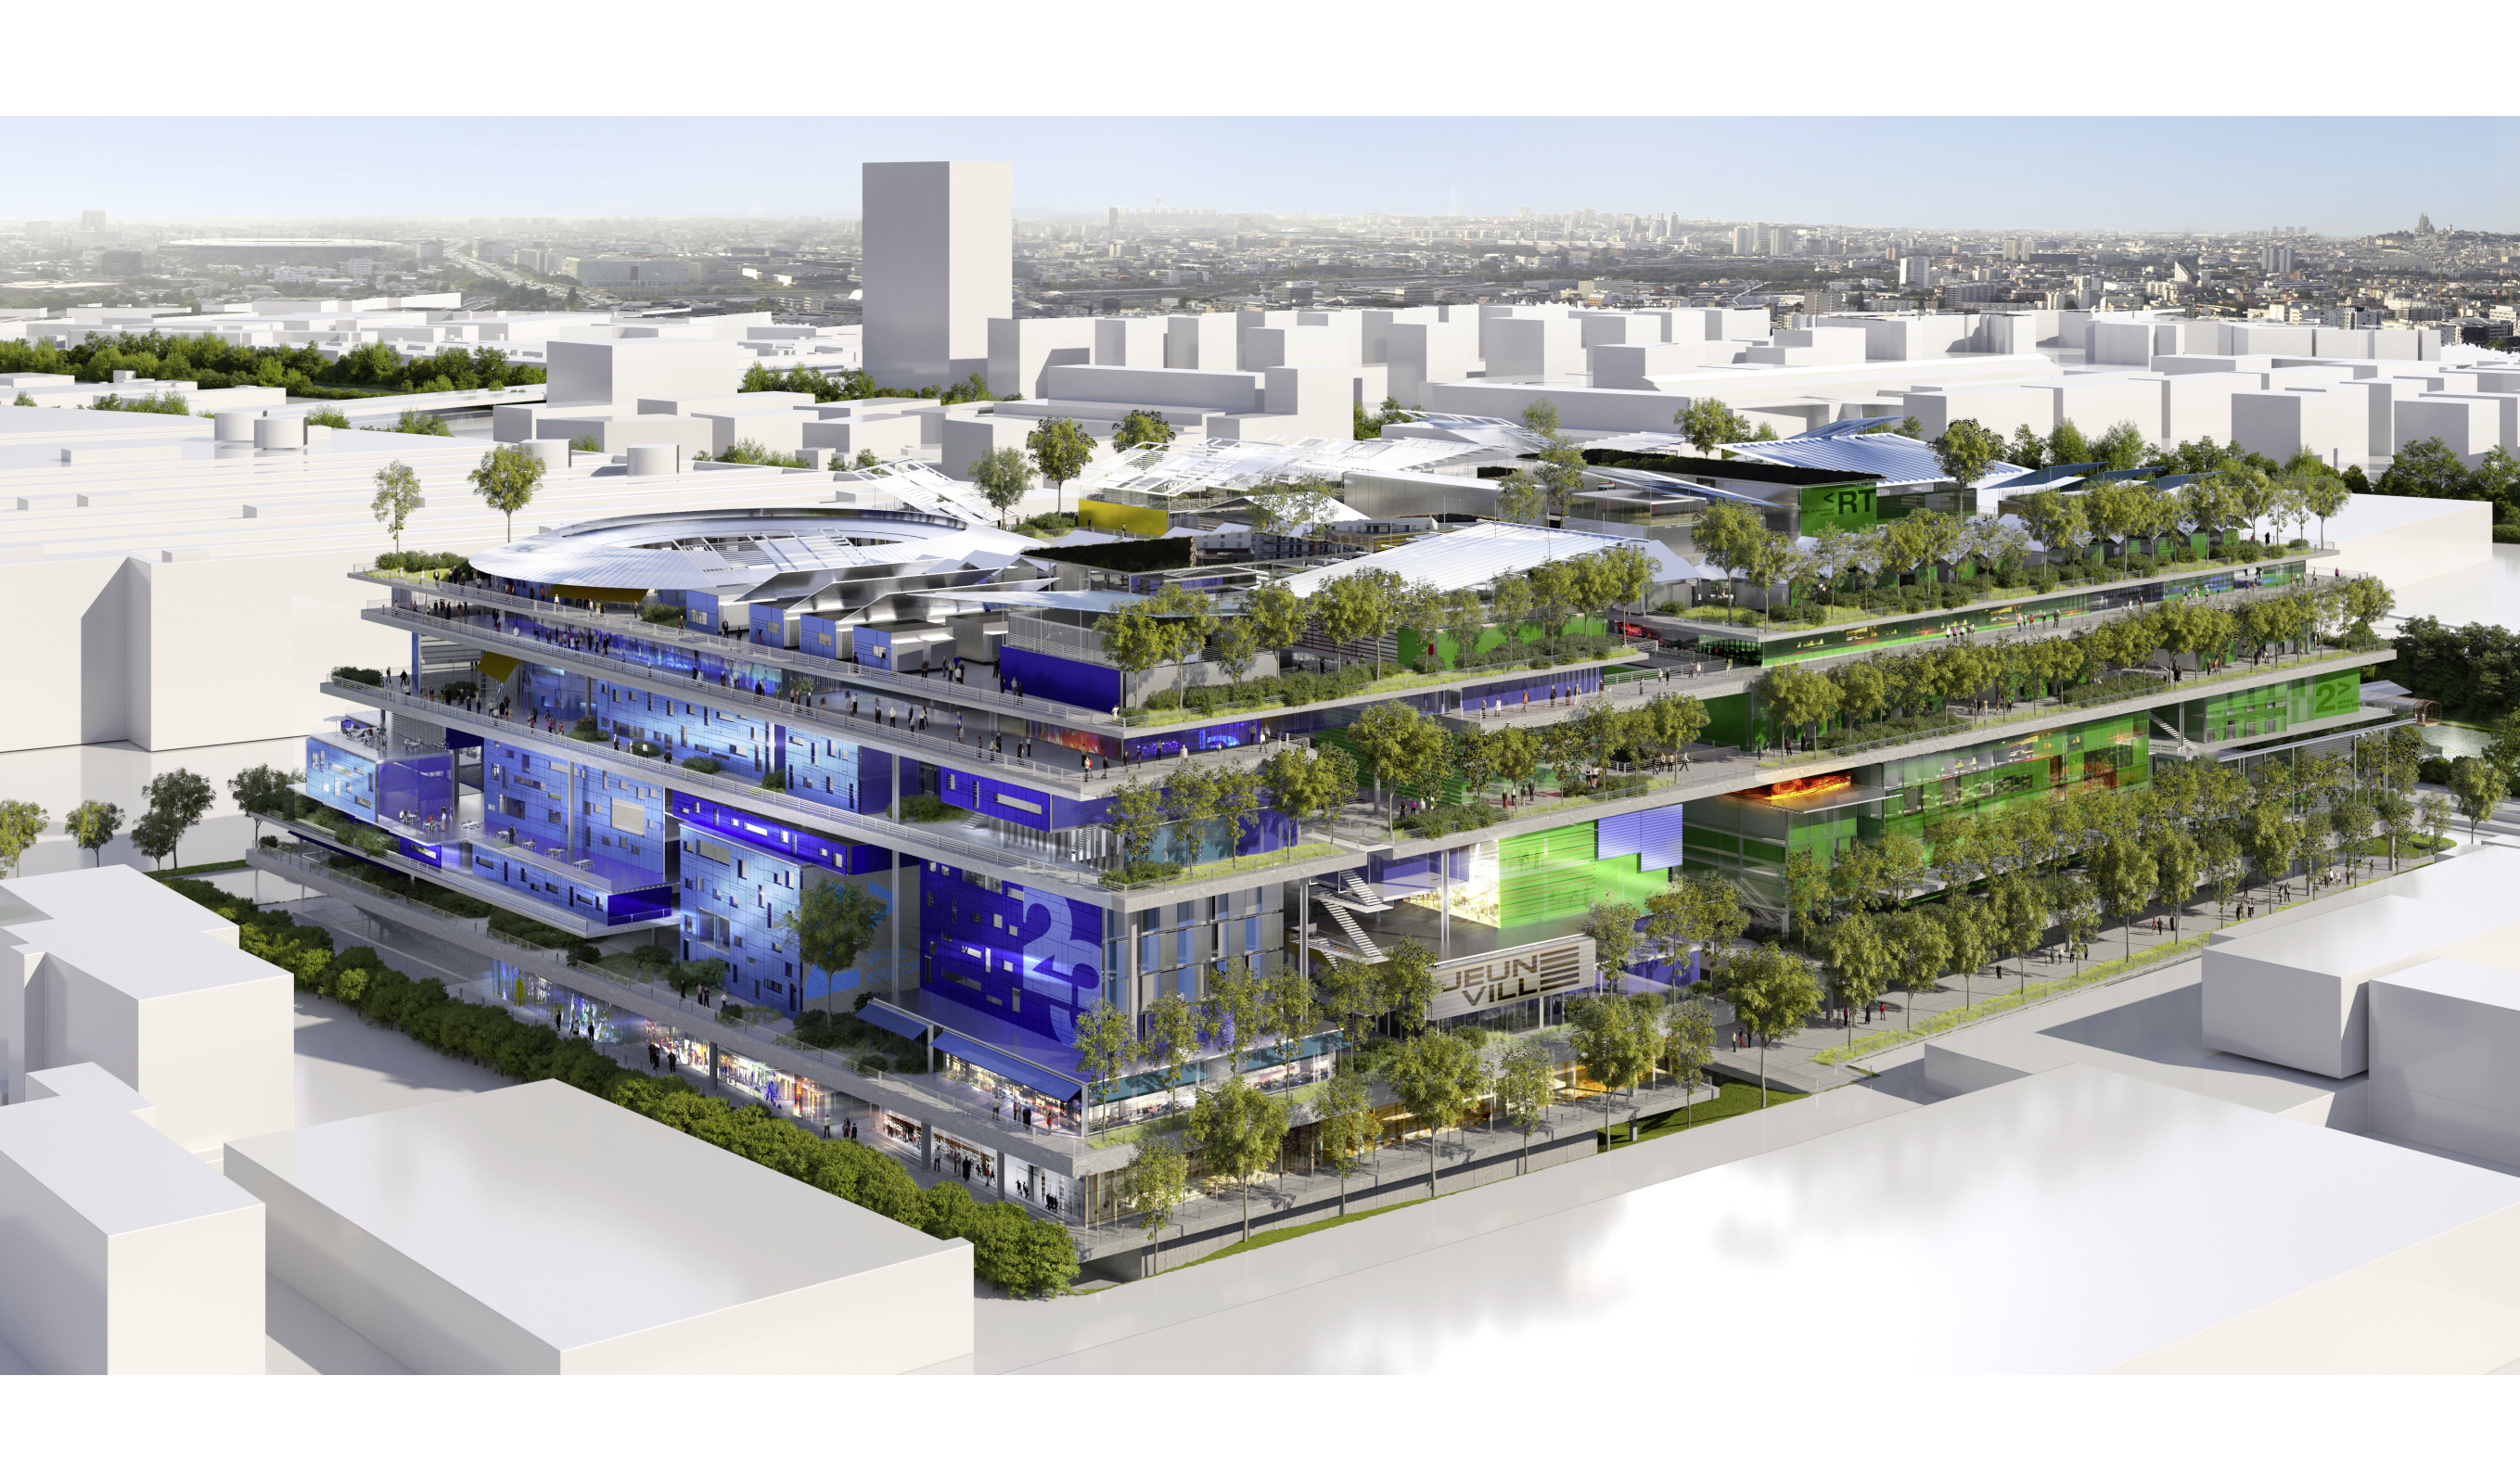 Le projet Jeuneville à Gennevilliers proposera 45 000 m² de bureaux, 26 000 m² d'espaces de coliving, 14 000 m² de résidences étudiantes, 5 000 m² dédiés à l'enseignement, 4 000 m² d'espaces maker/fablab, 2 300 m² de commerces de proximité et 30 000 m² d'espaces publics/verts.